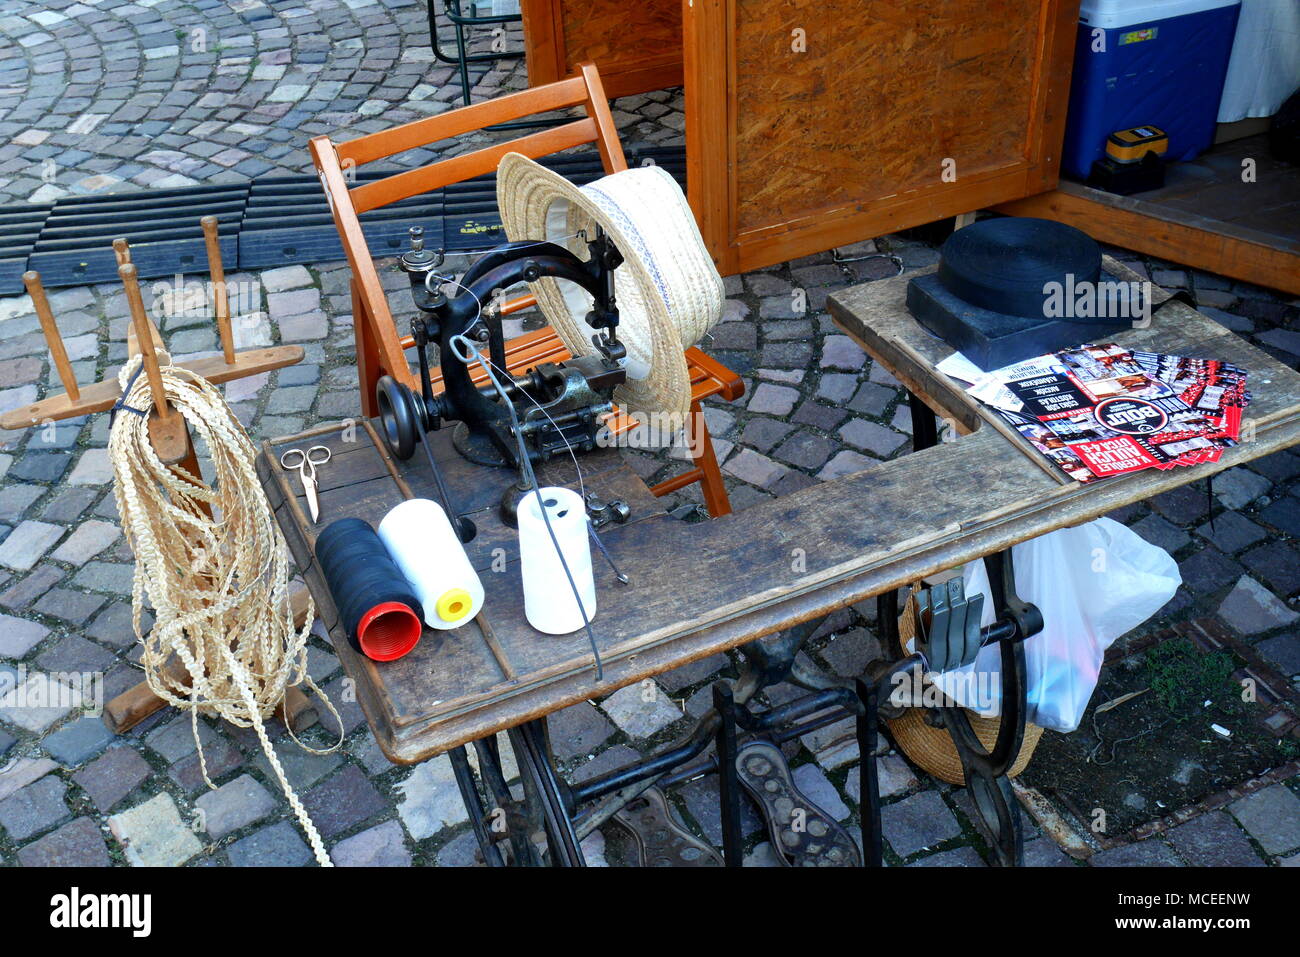 Table du chapelier et de l'équipement ou outils à une foire artisanale, quartier du château, Budapest, Hongrie Banque D'Images